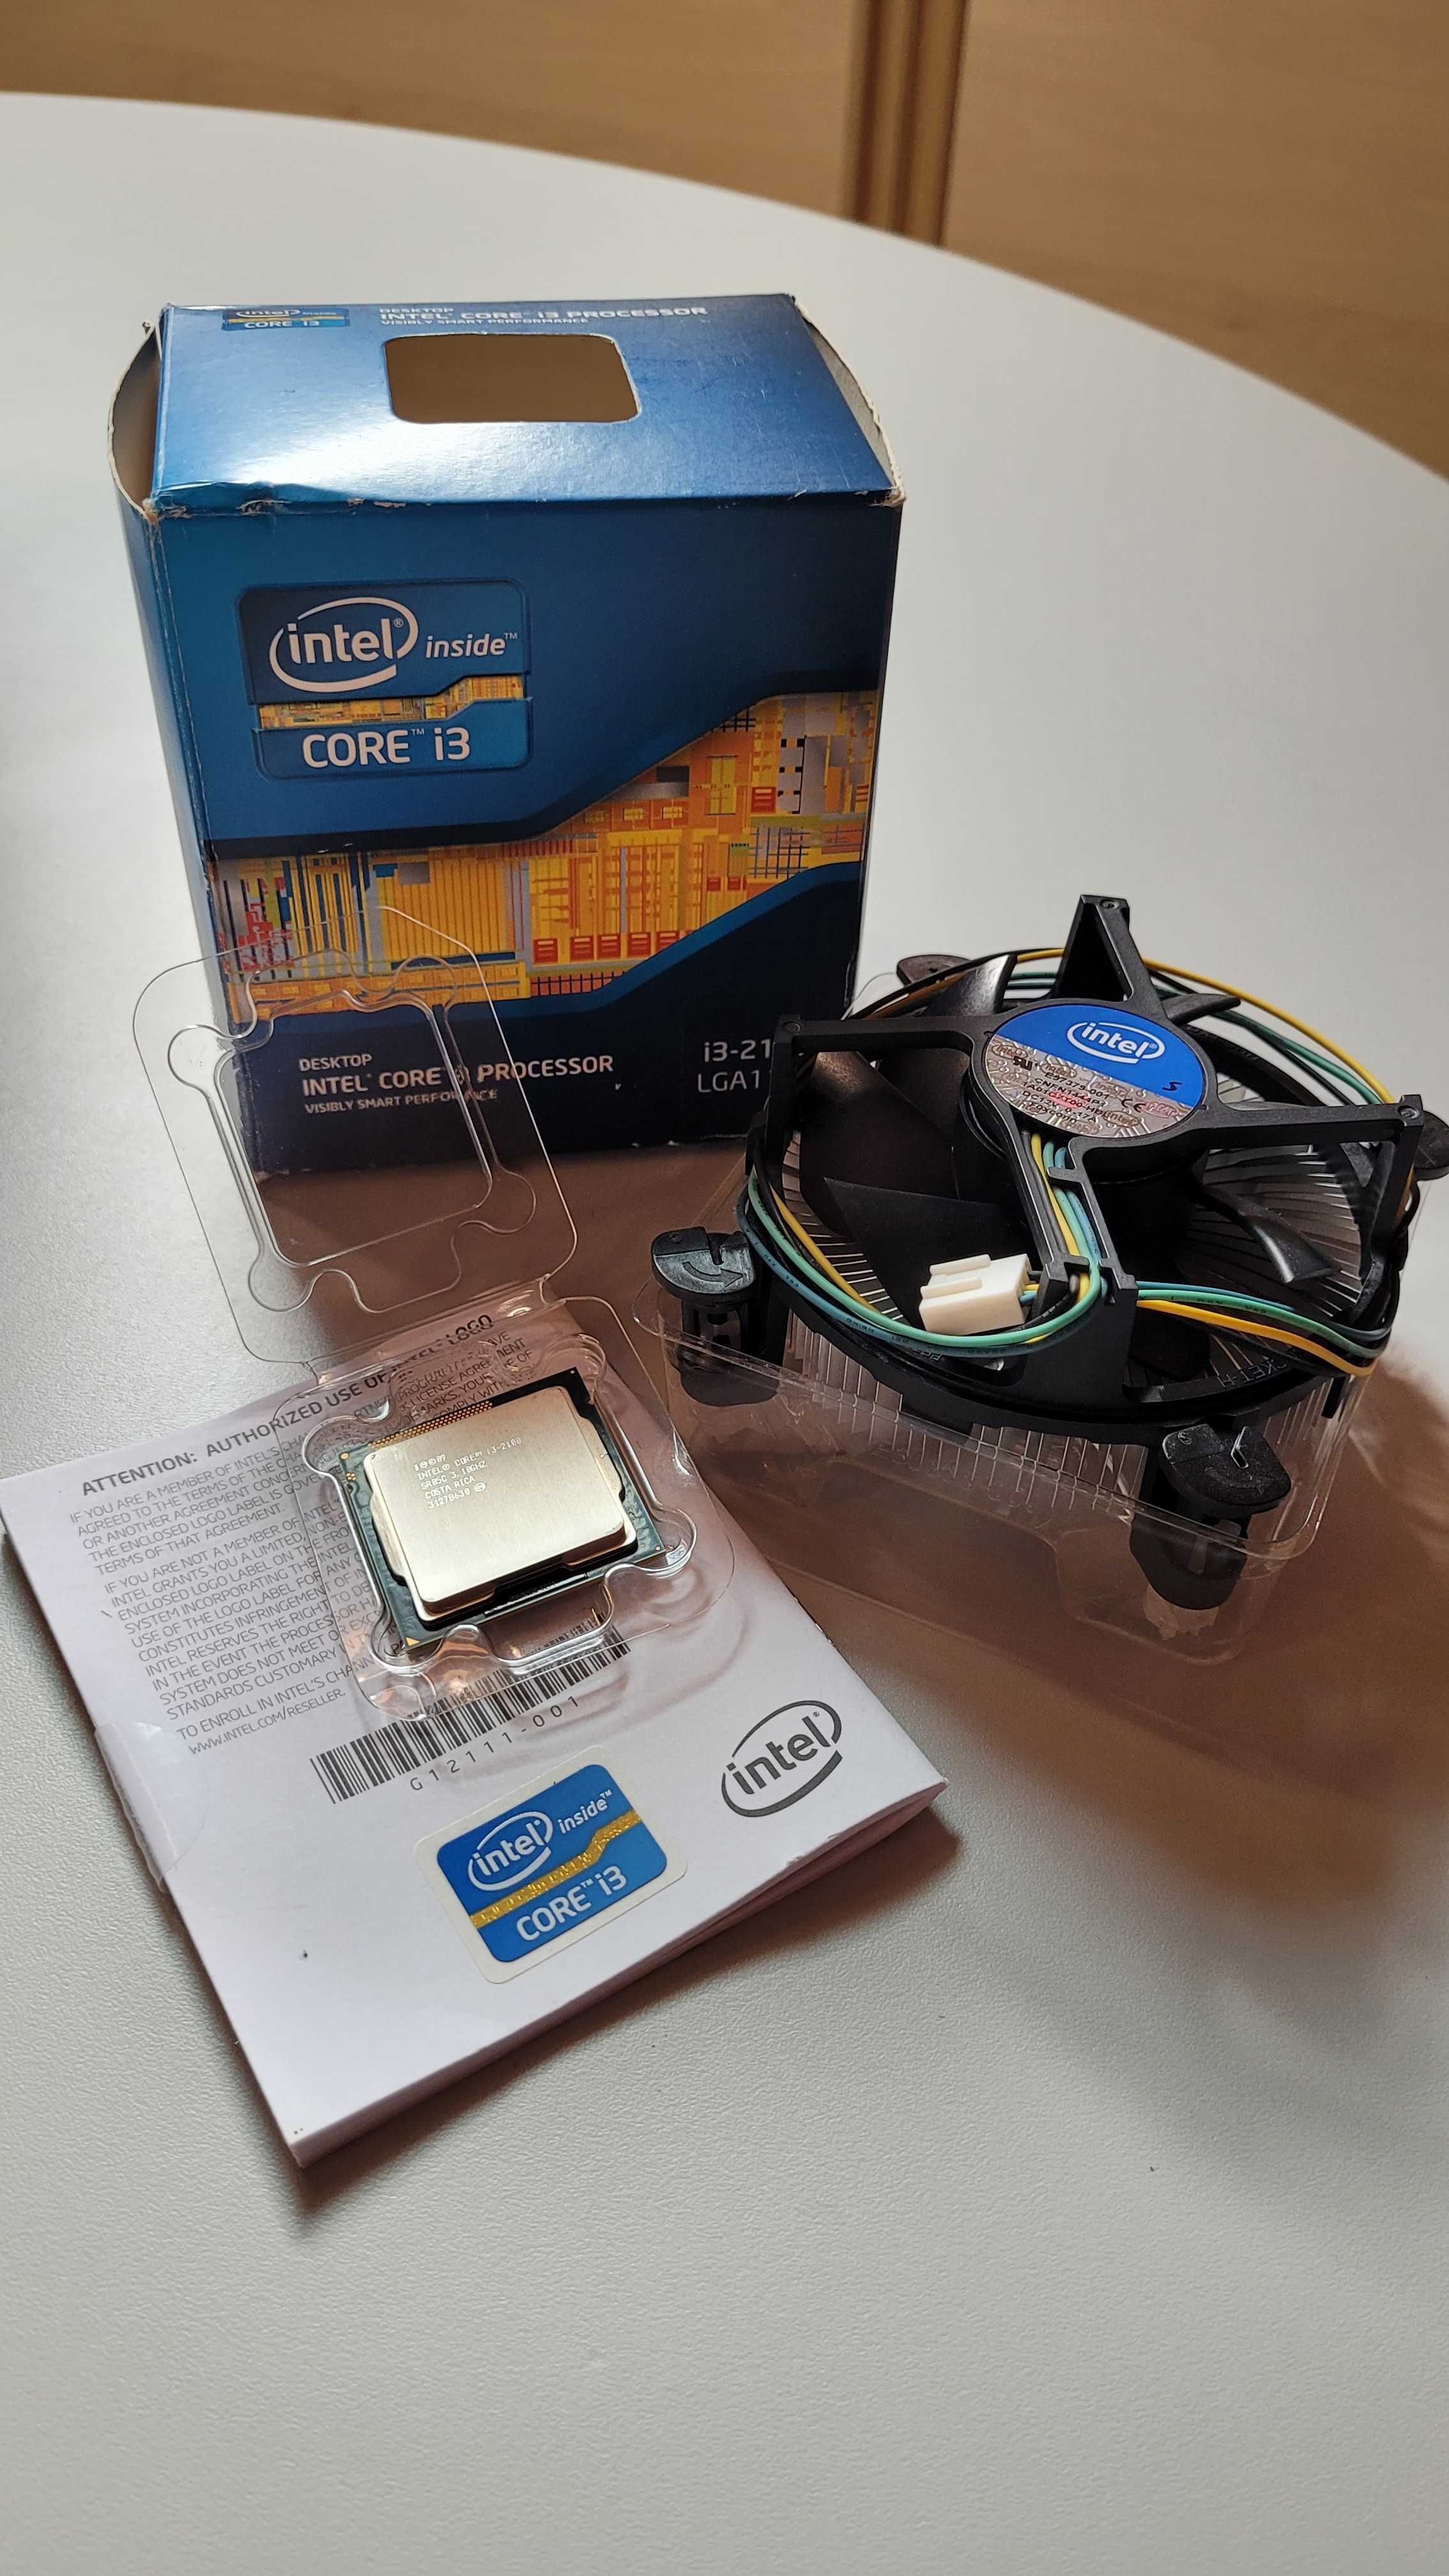 Processador Intel Core i3-2100 3.10 GHz